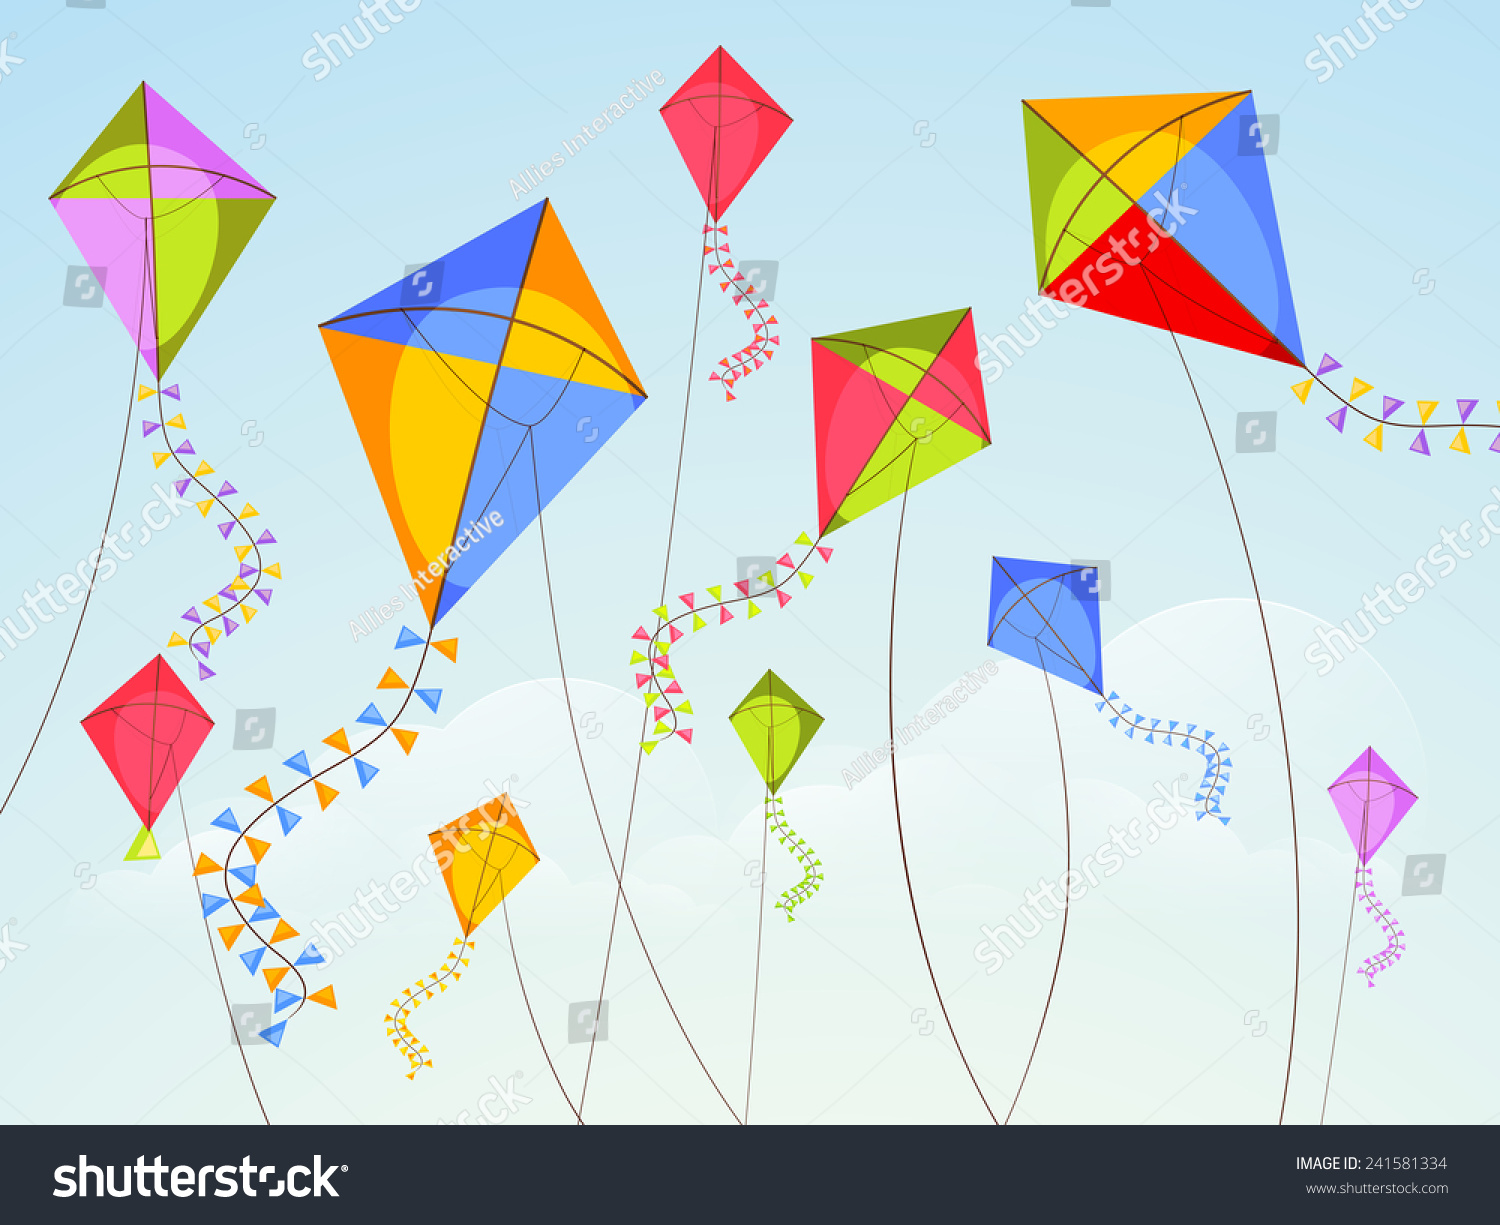 SVG of Shiny kites flying on occasion of Happy Vasant Panchami celebration. svg